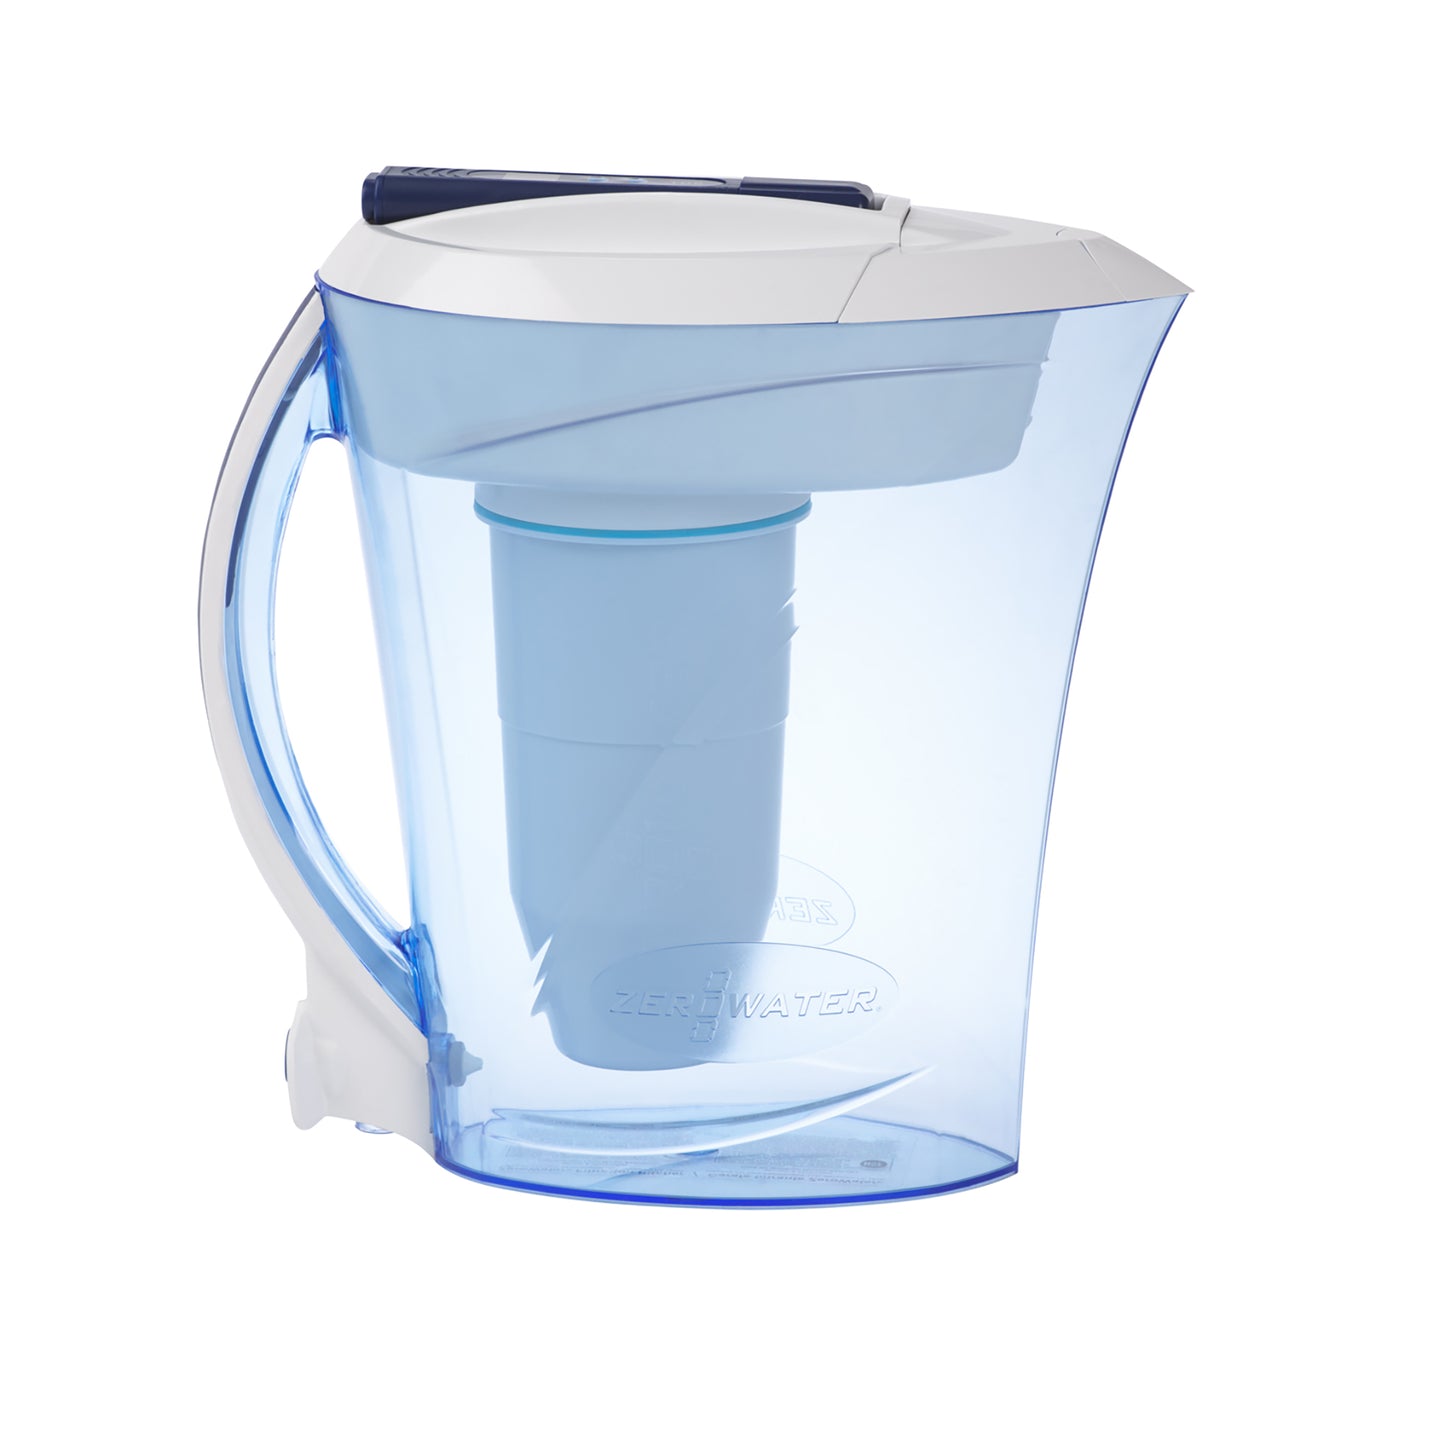 2,4 liter waterkan | Kan voor 10 kopjes (2,4 liter)